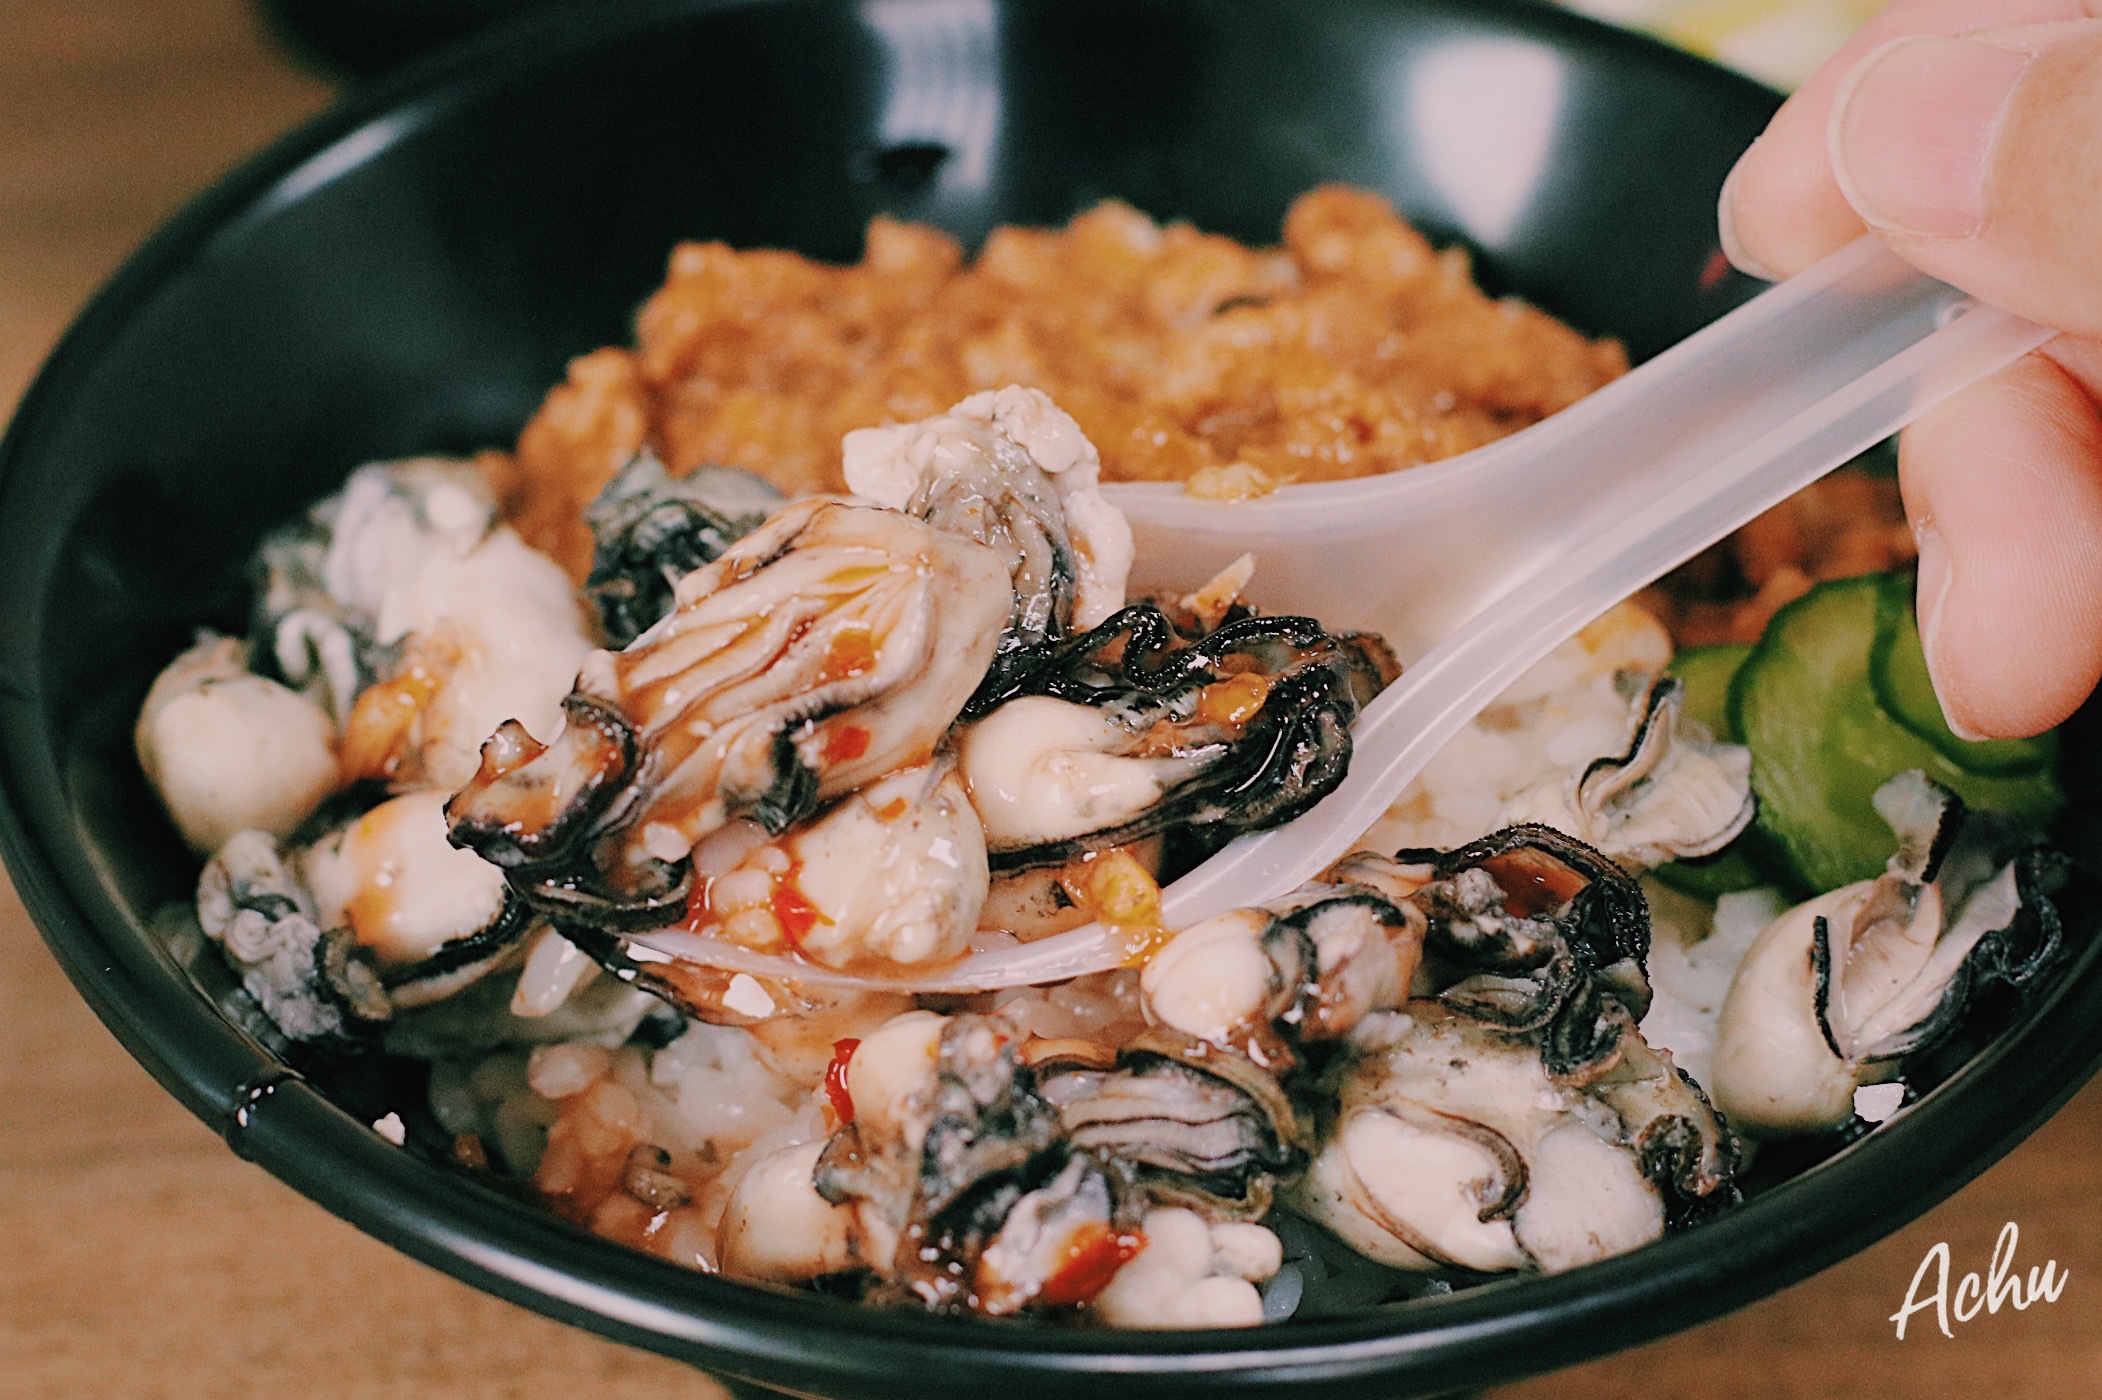 【澎湖美食】原味漁村小吃 市區人氣美食 這裡有賣痛風滷肉飯 (菜單) @阿朱的日常